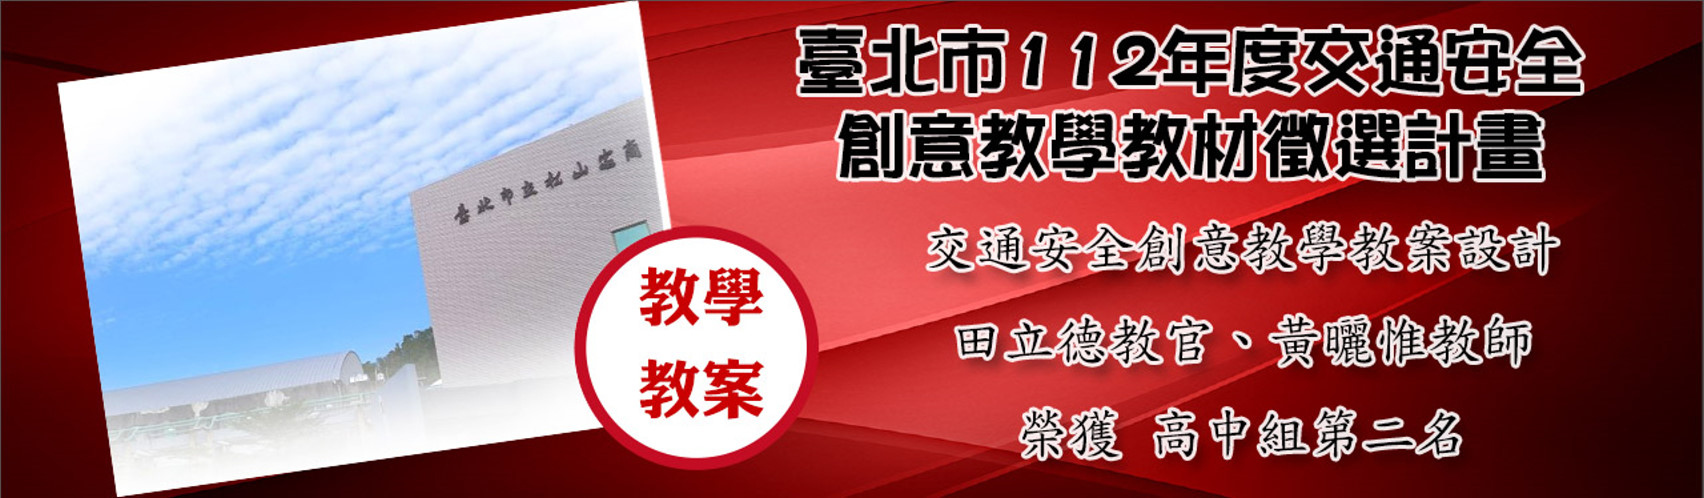 臺北市112年度交通安全創意教學教材徵選計畫交通安全創意教學教案設計高中組第2名